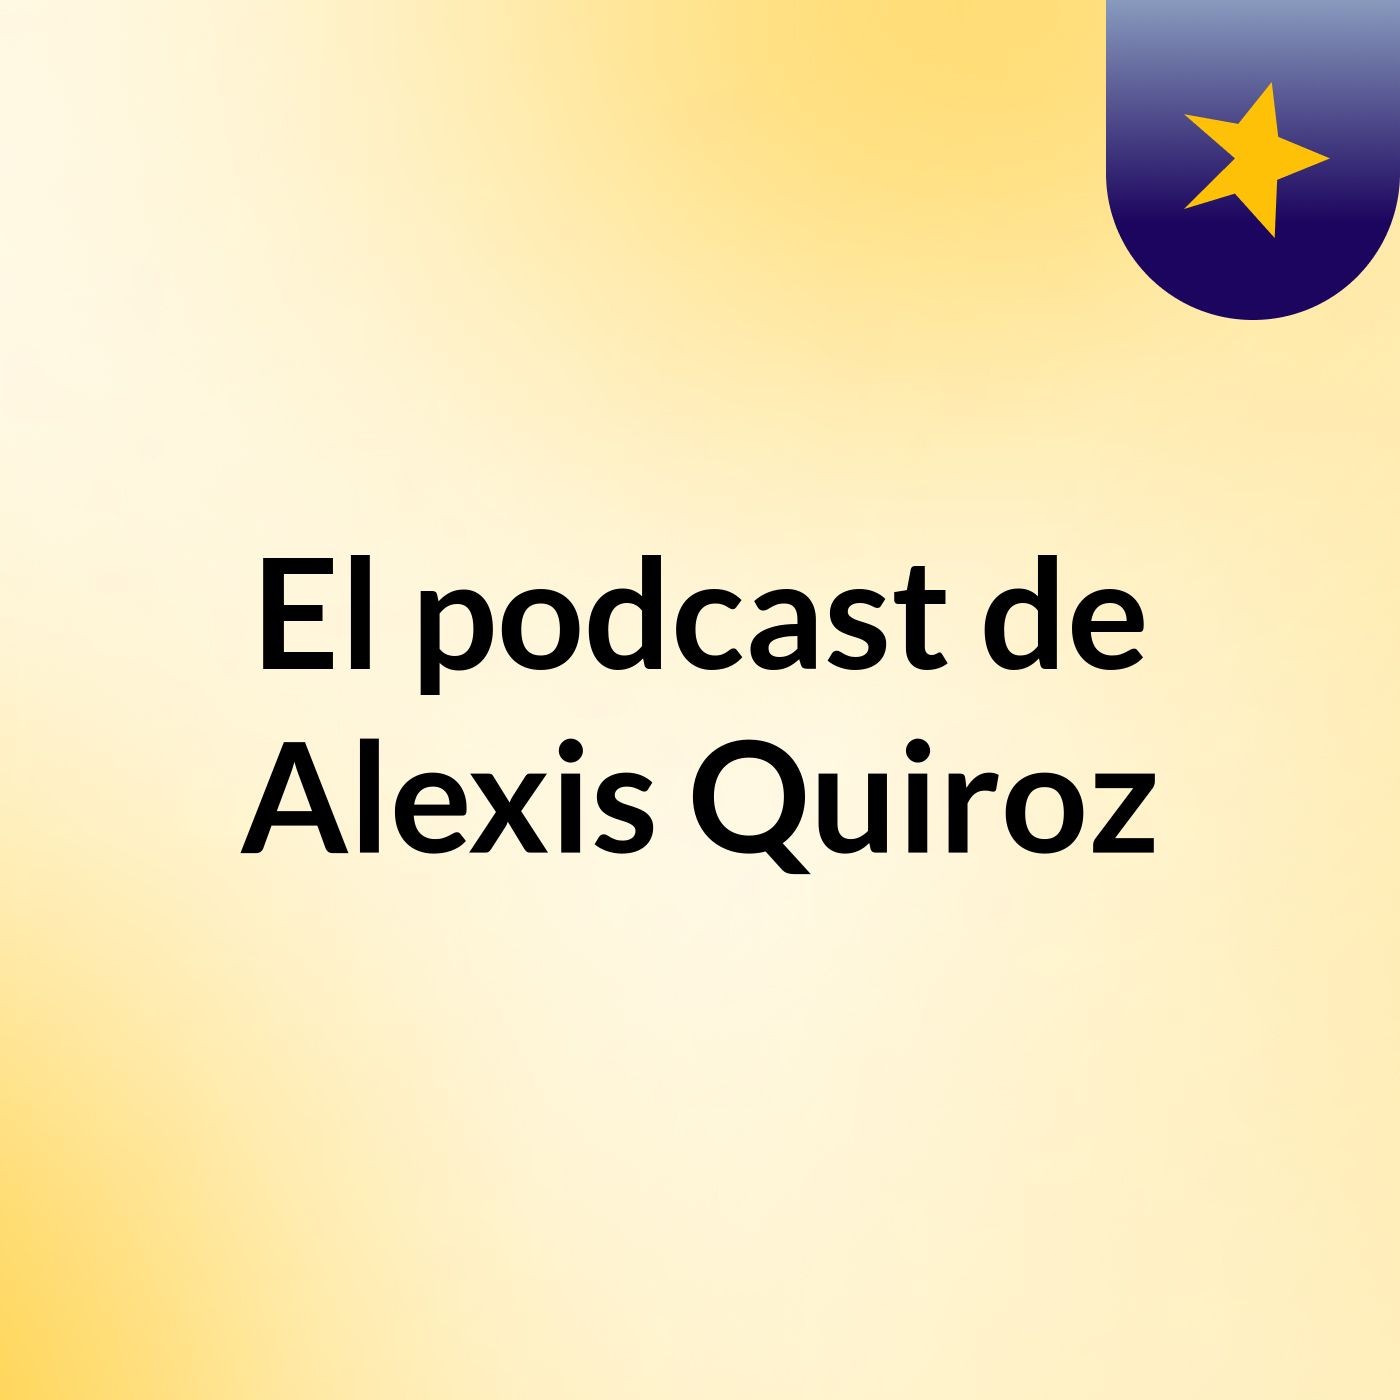 El podcast de Alexis Quiroz